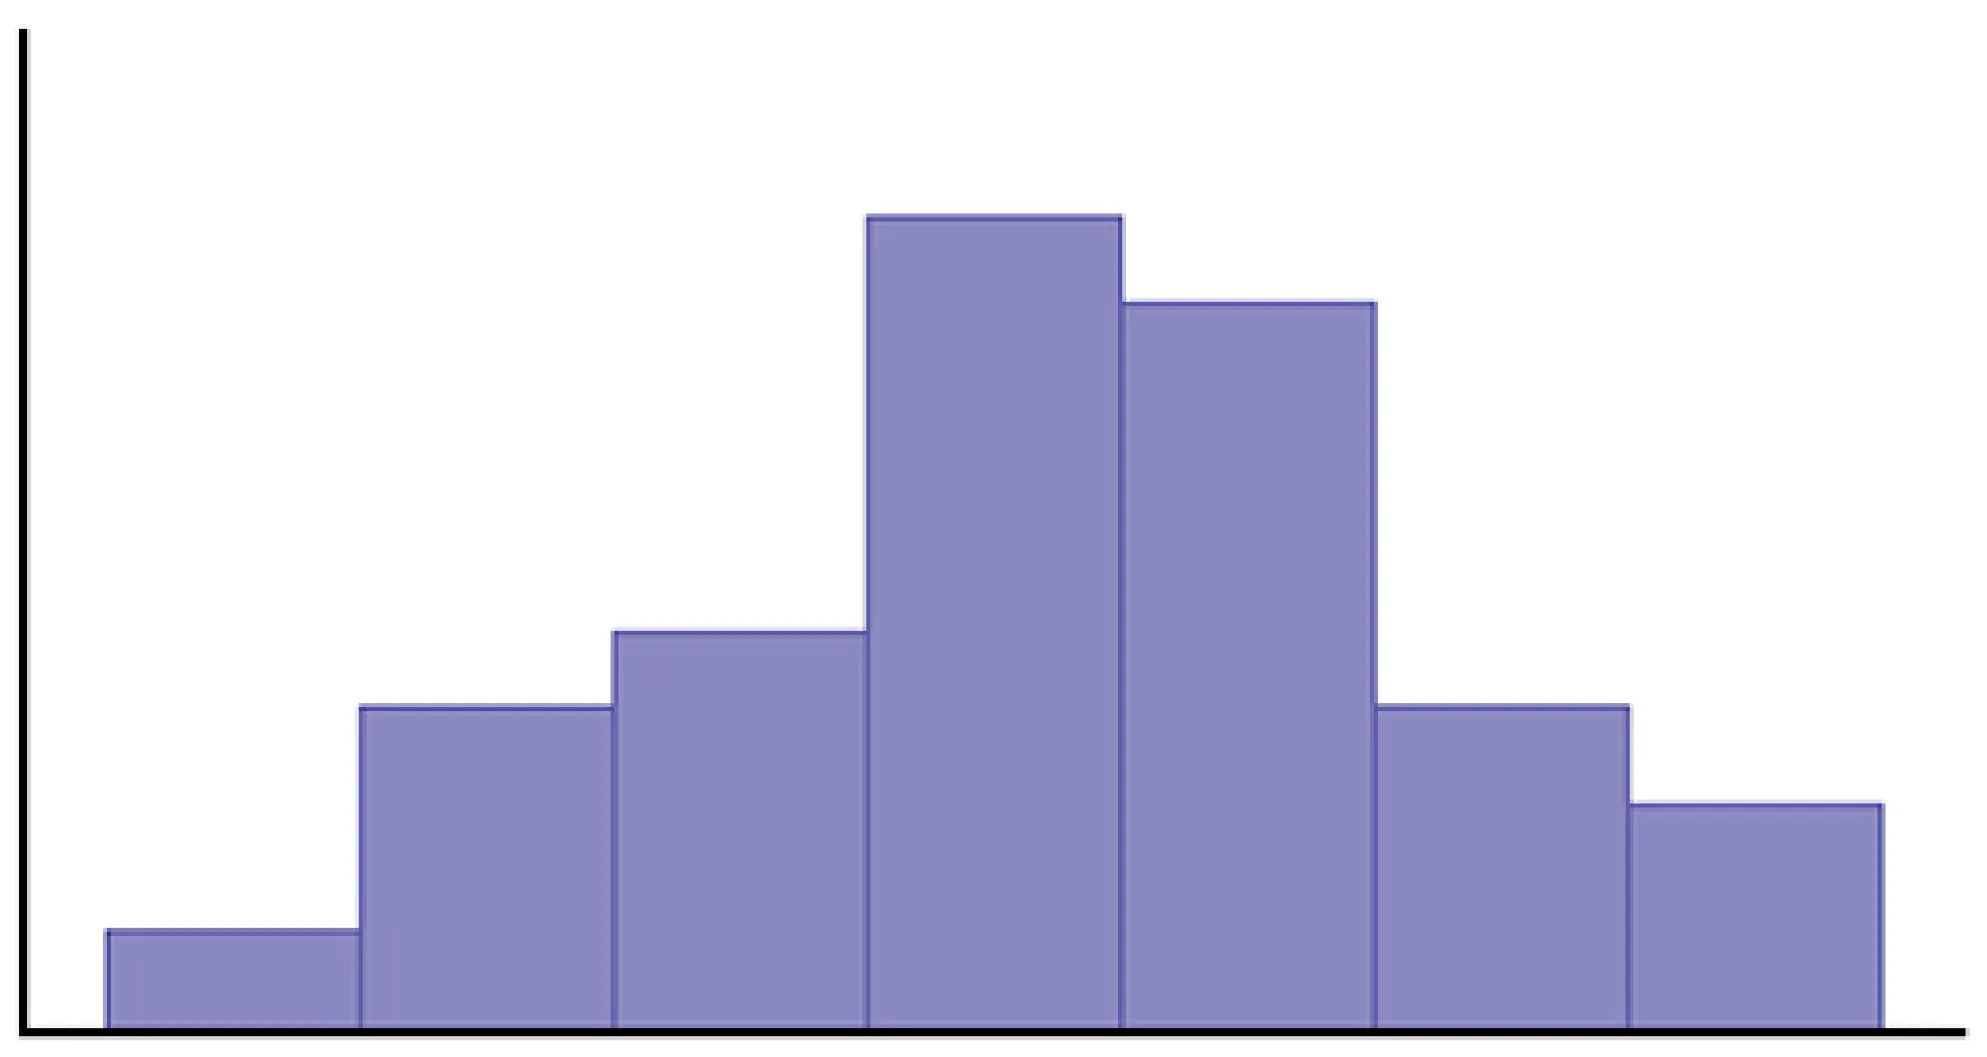 Este gráfico es un histograma sin identificar. La distribución es aproximadamente simétrica. Hay un único pico en el centro del gráfico y las alturas de las barras disminuyen desde ese punto hacia cada extremo del gráfico.